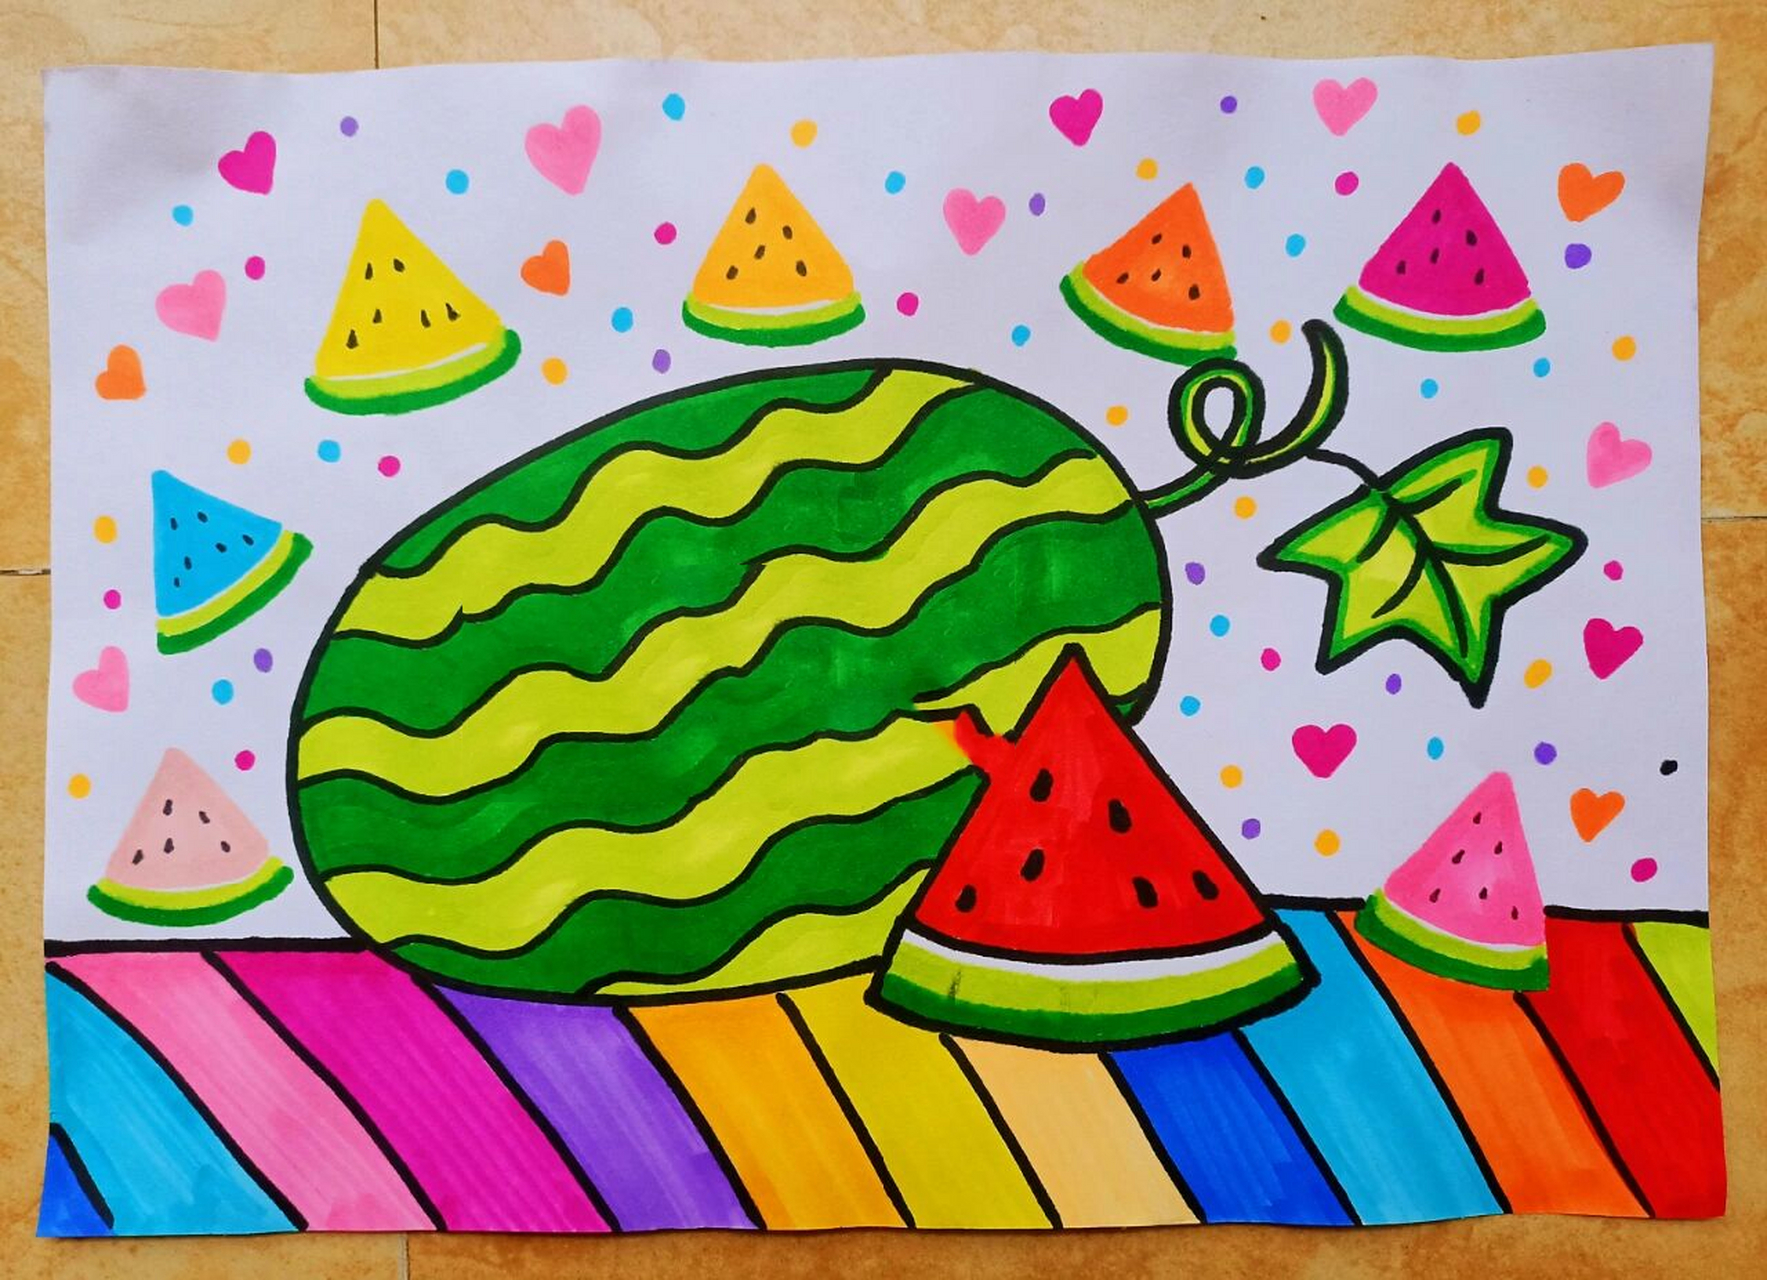 大西瓜儿童画简笔画少儿美术手绘水彩笔画 5月26日 课程名称《好吃的